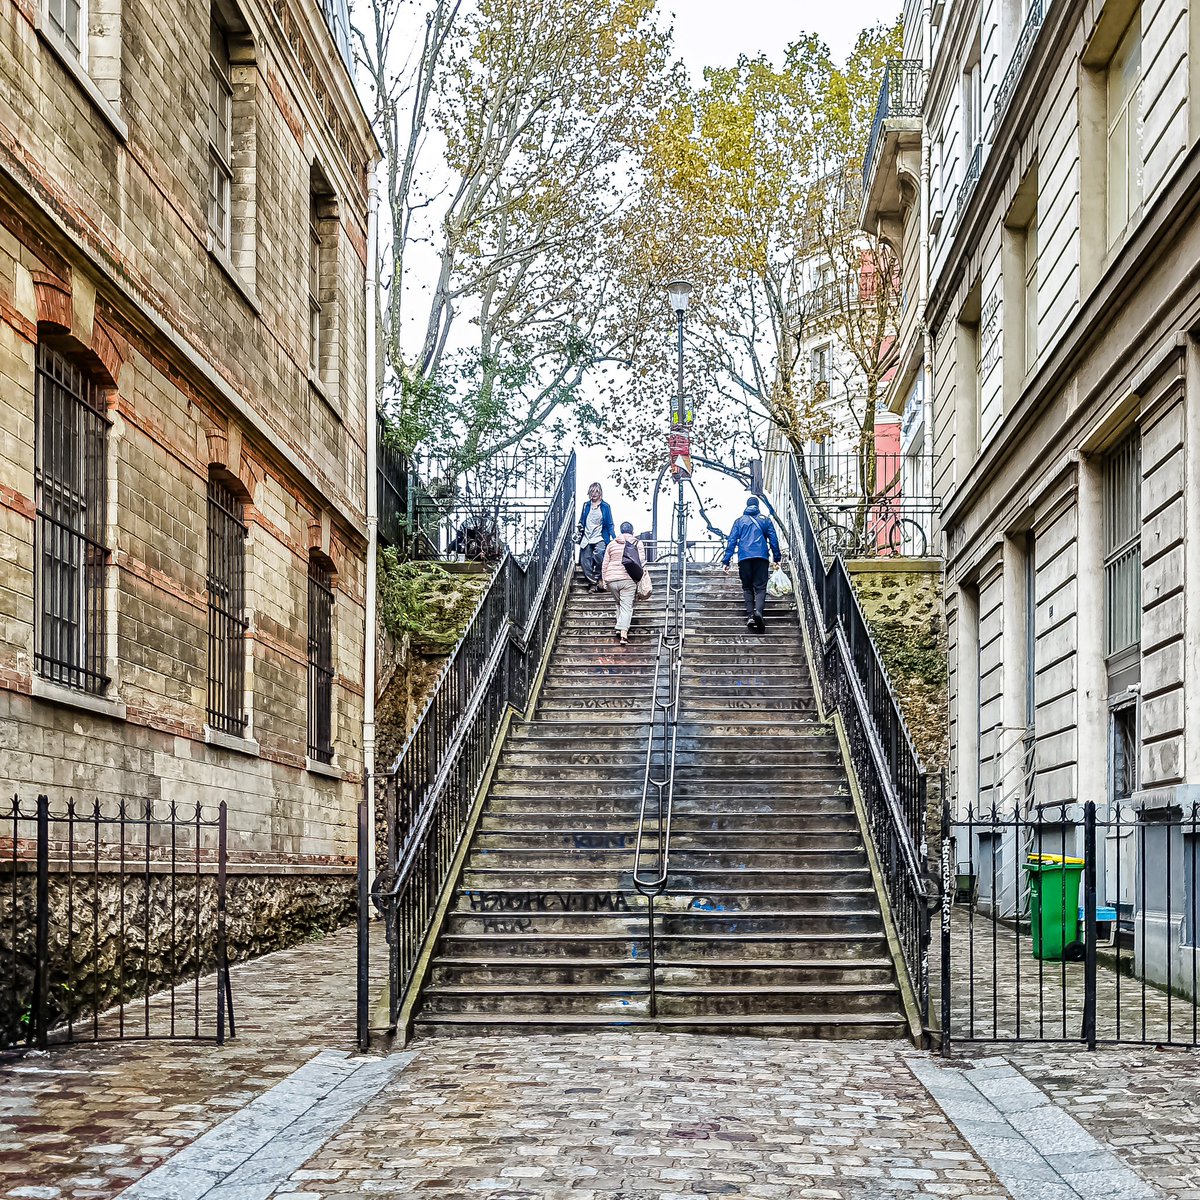 Escaliers de la rue Levert à Belleville comme un écho à ceux de Montmartre - Paris 20

#parisladouce #paris #pariscartepostale #parisjetaime #pariscityguide #paris20 #thisisparis #visitparisregion #patrimoine #architecture #streetofparis #montmartre #belleville #ruelevert